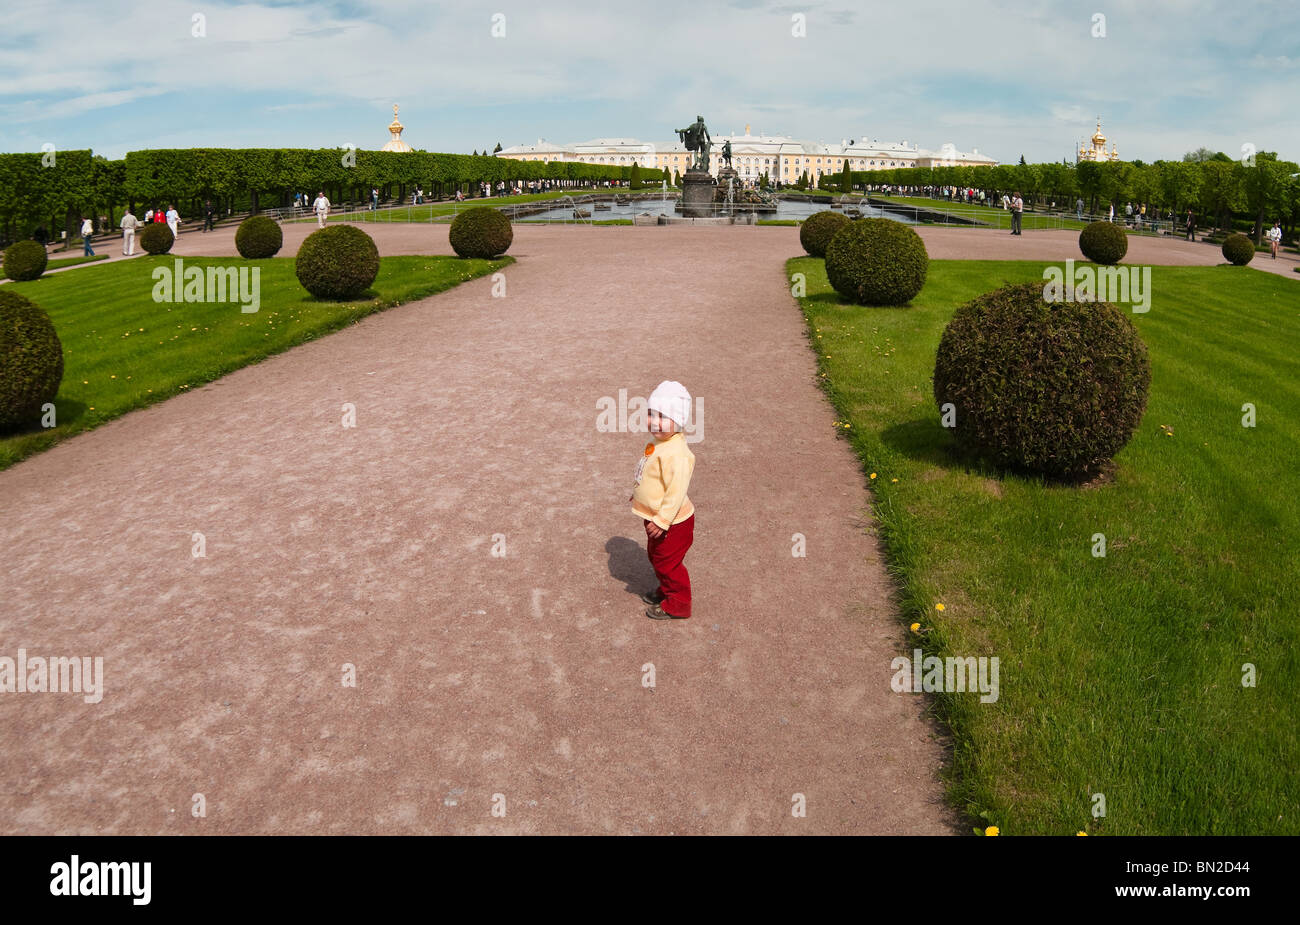 Les palais, les fontaines, et les jardins de Peterhof Grand Palais à Saint-Pétersbourg, Russie. Un enfant de marcher entre les plantes. Banque D'Images